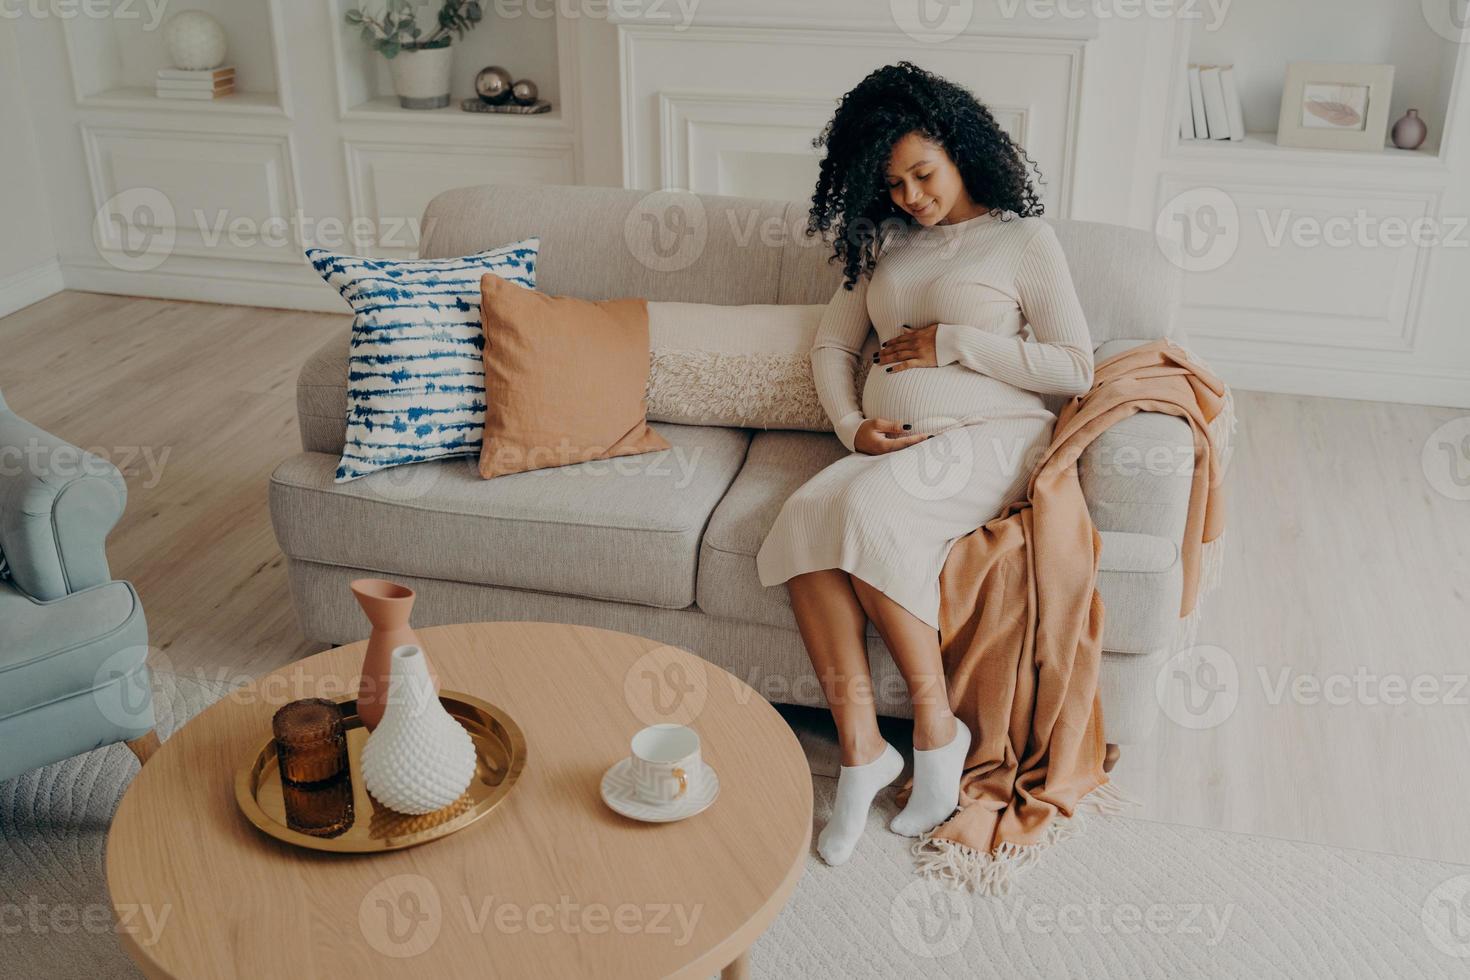 mooie foto Afro-Amerikaanse dame zittend op een gezellige bank en in verwachting van een baby, neerkijkend op haar buik